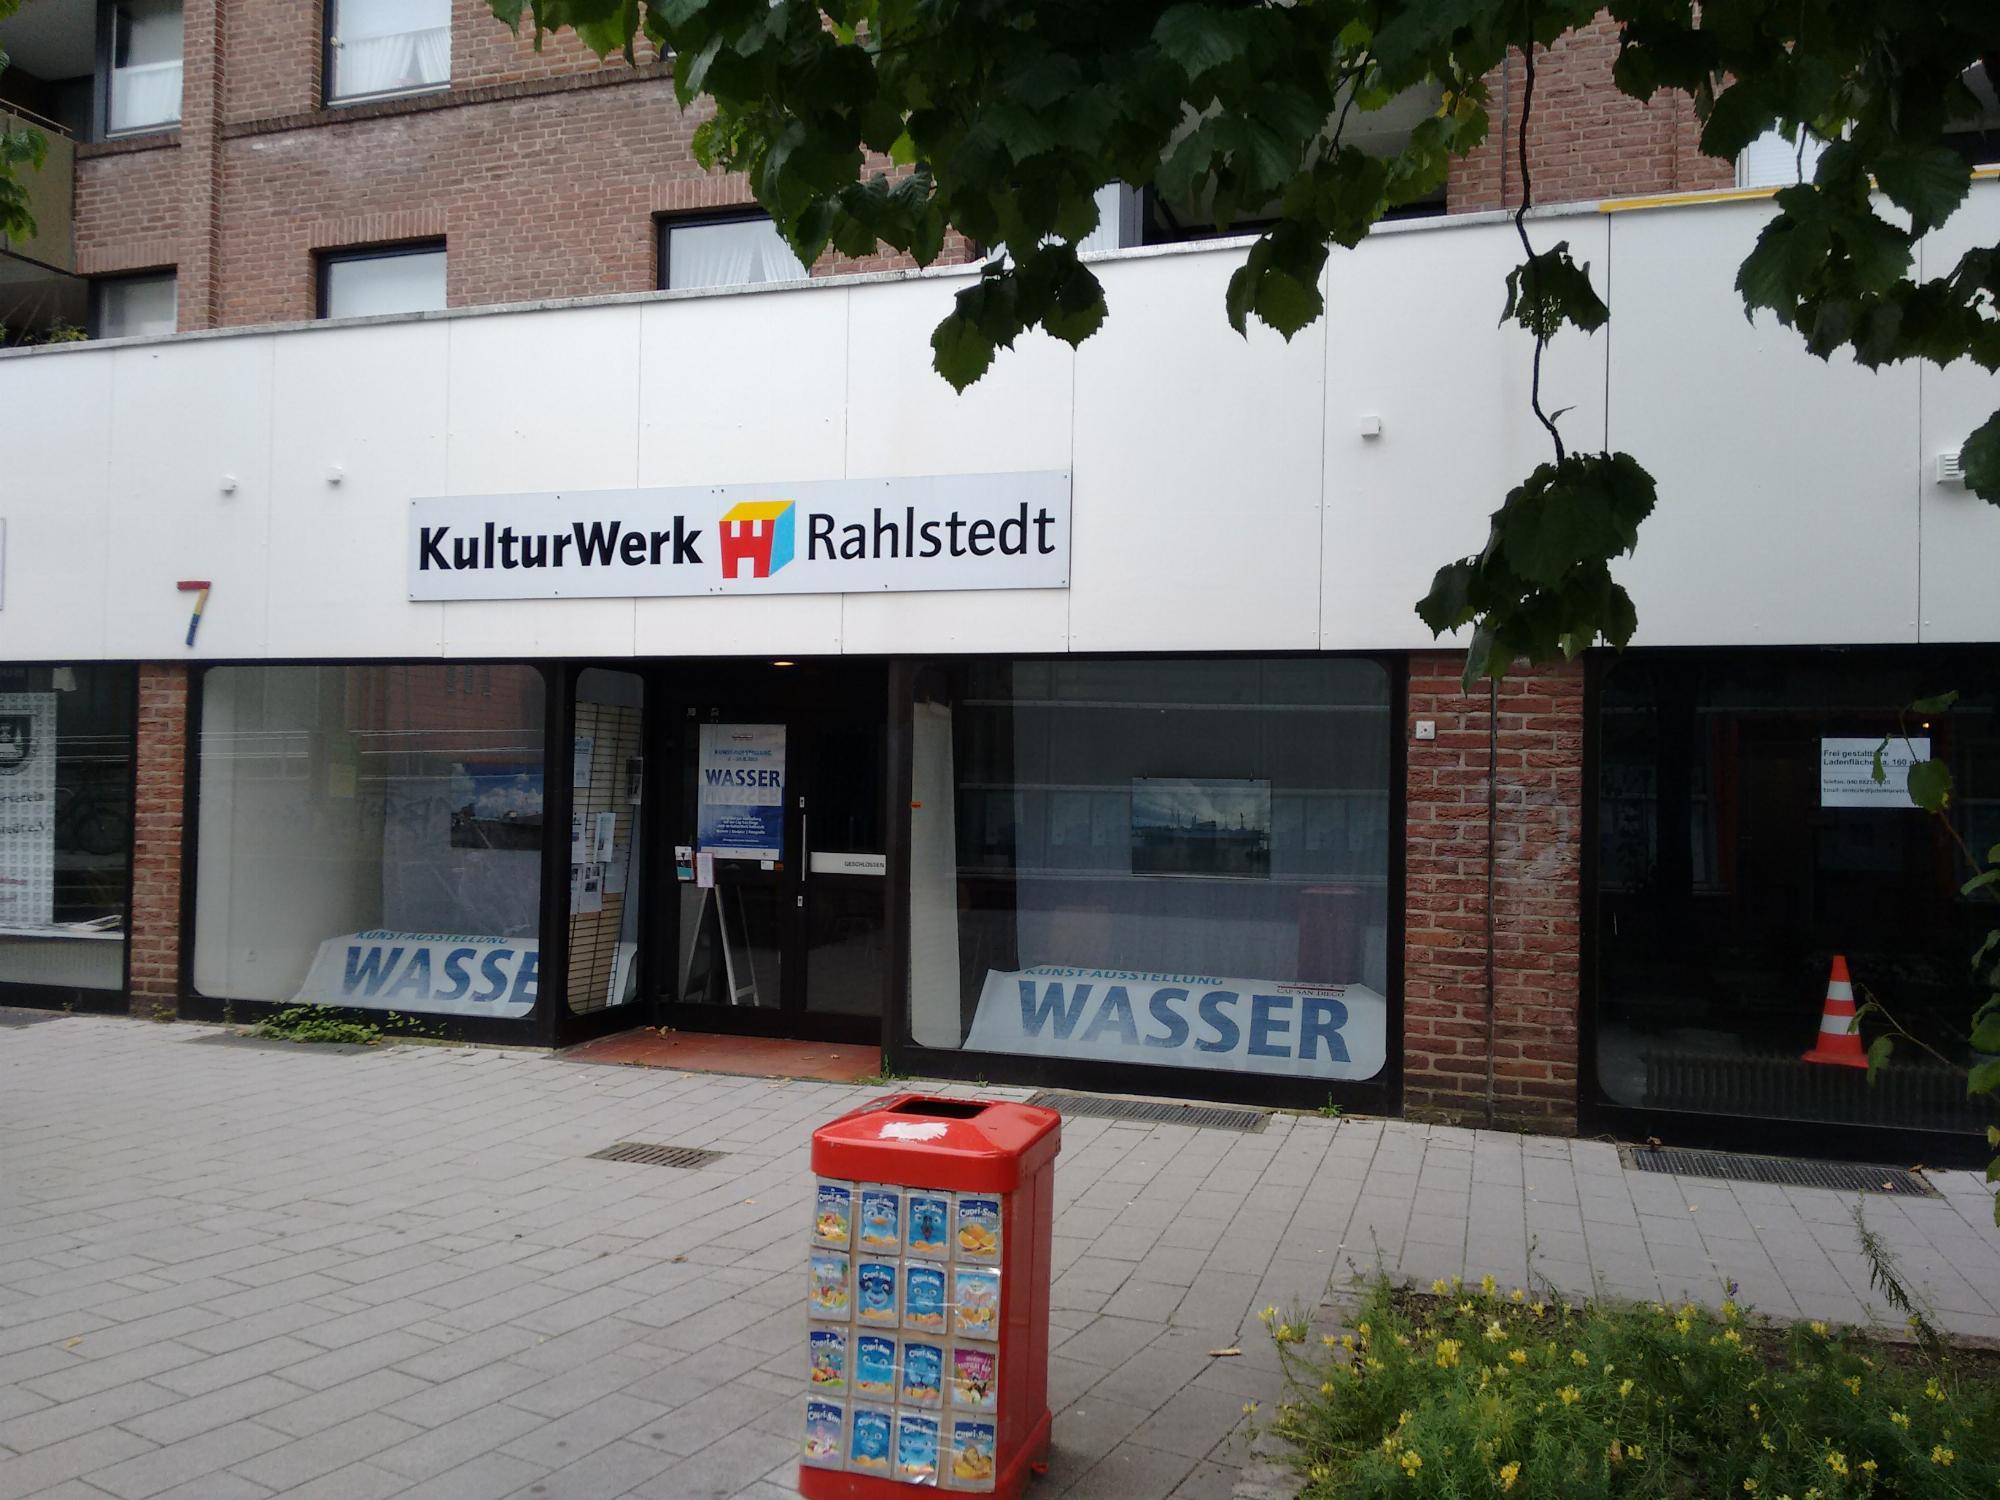 KulturWerk Rahlstedt